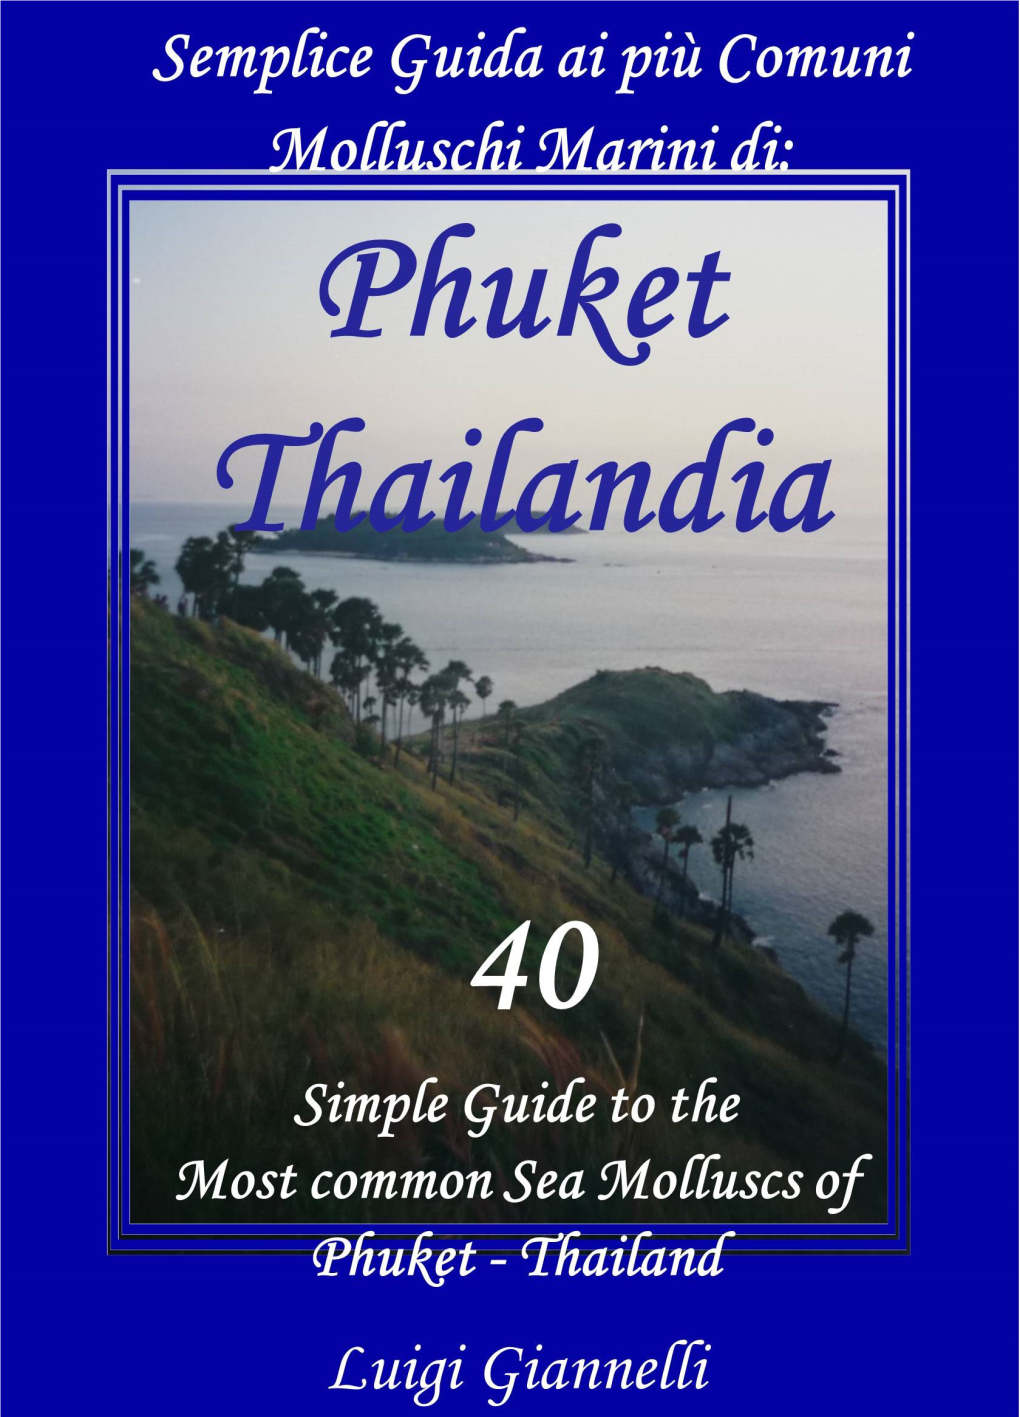 Phuket (Thailand)